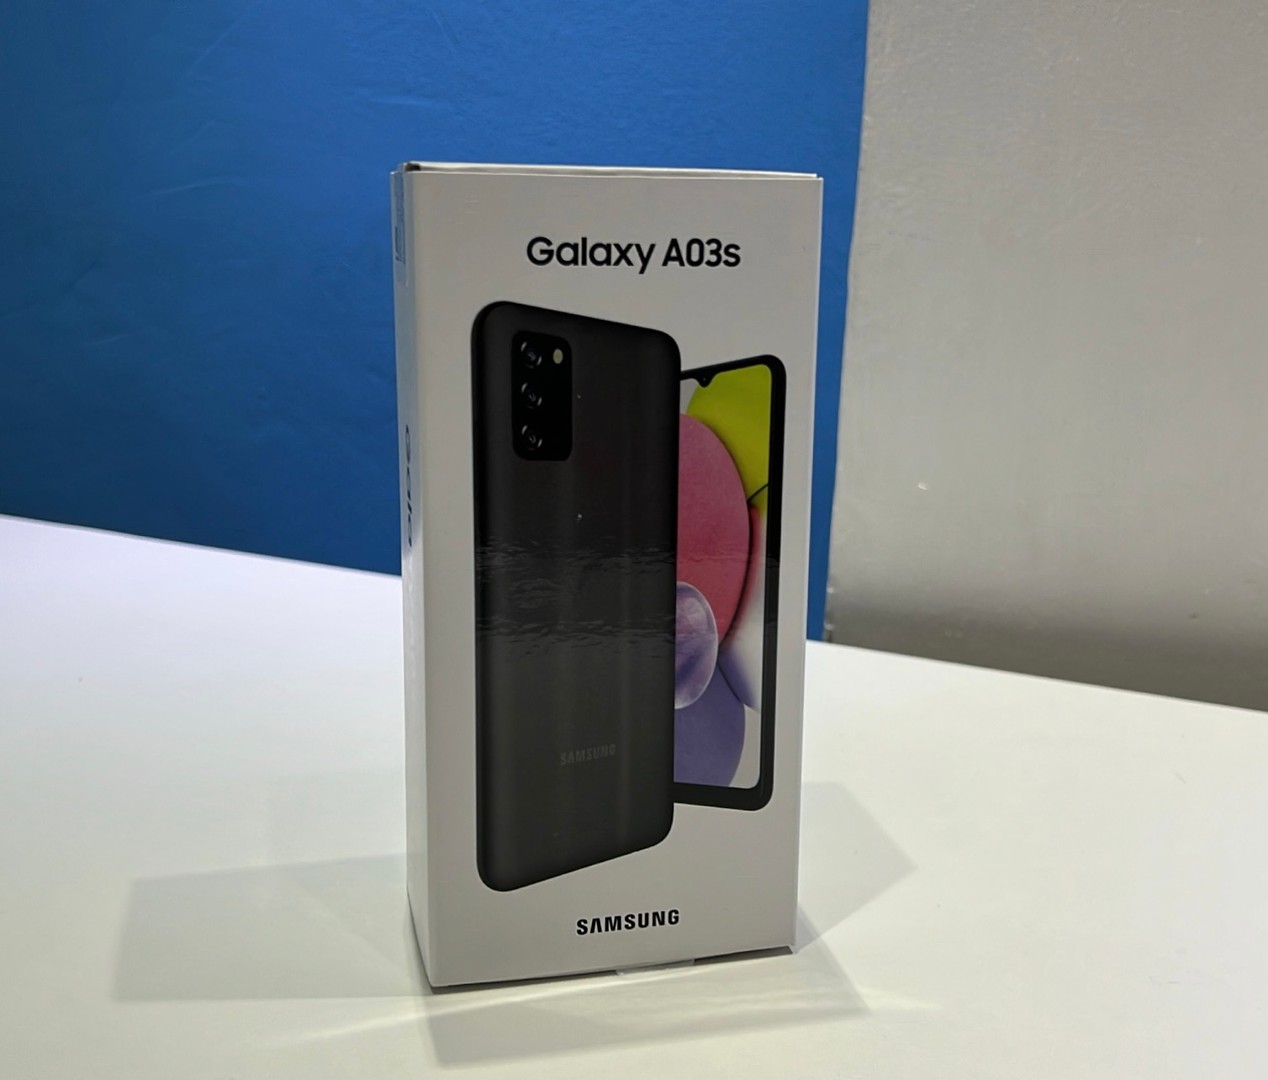 consolas y videojuegos - Vendo Samsung Galaxy A03S 64GB Nuevos, Desbloqueados, Garantía, $ 10,800 NEG